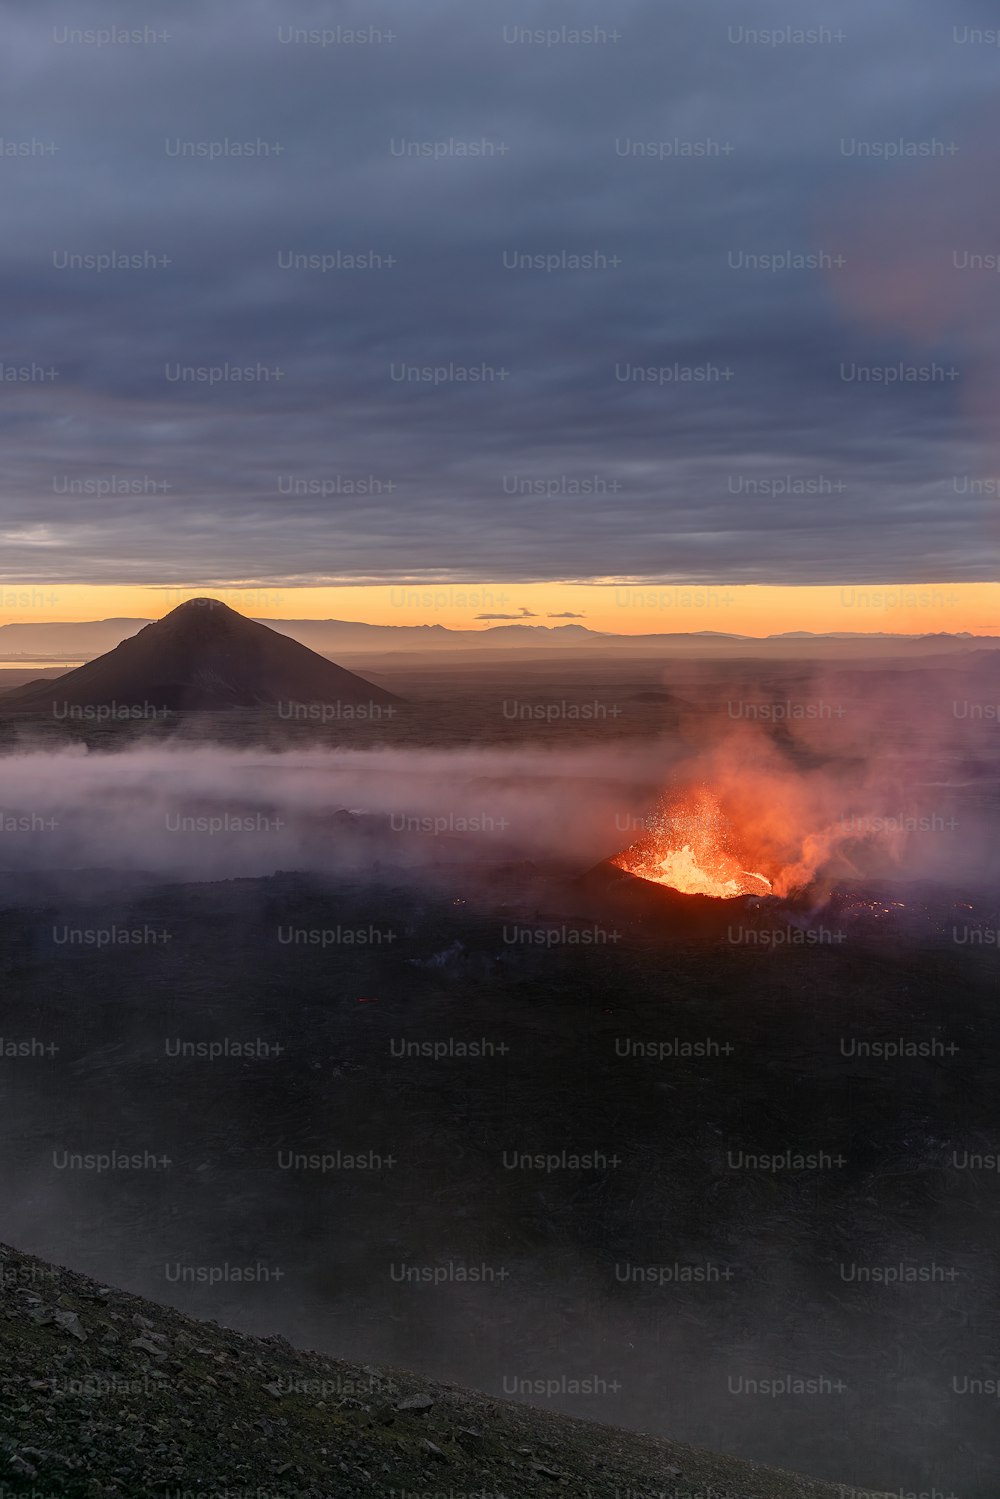 Ein Vulkan, der in der Ferne Lava ausspuckt